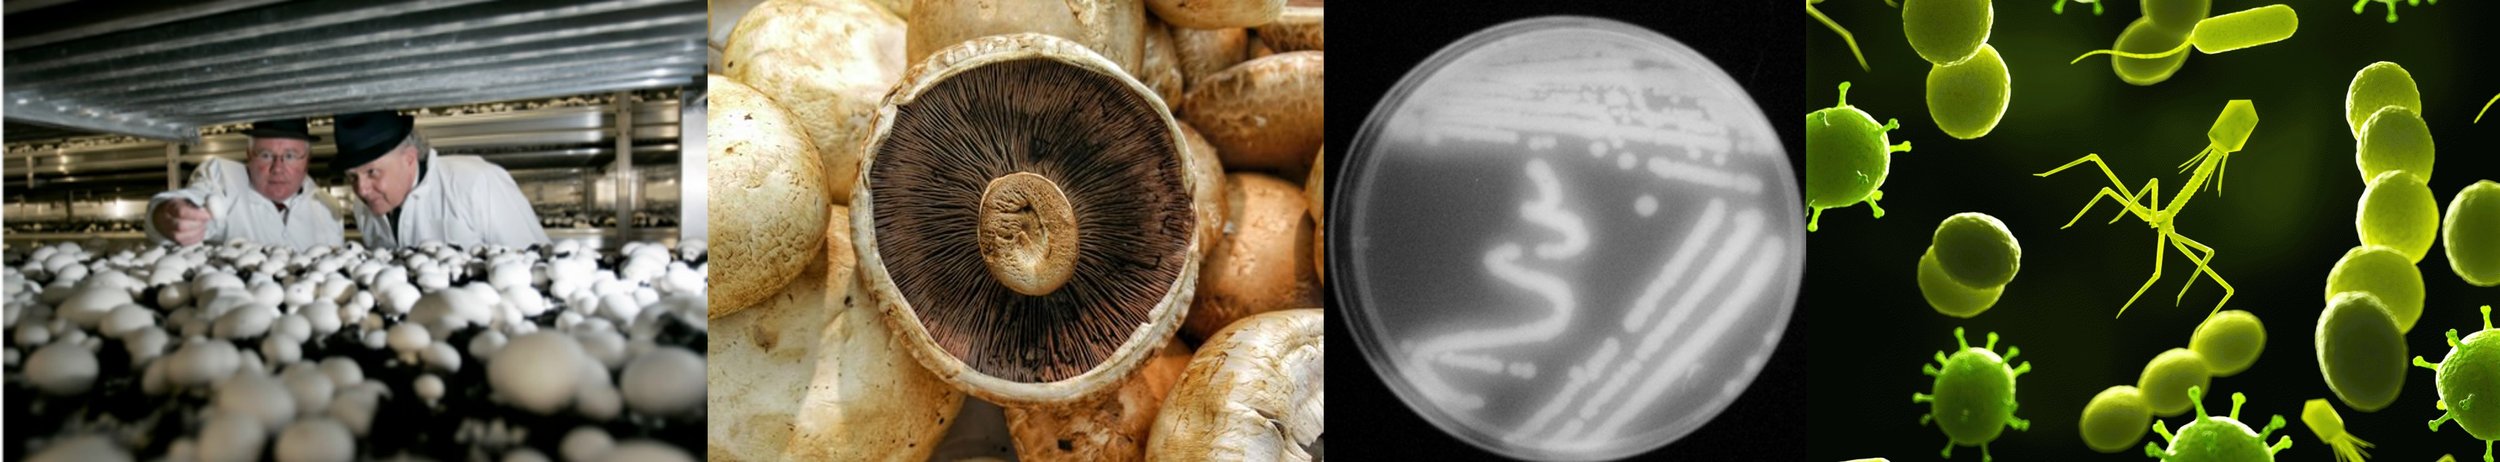 Mushroom blotch